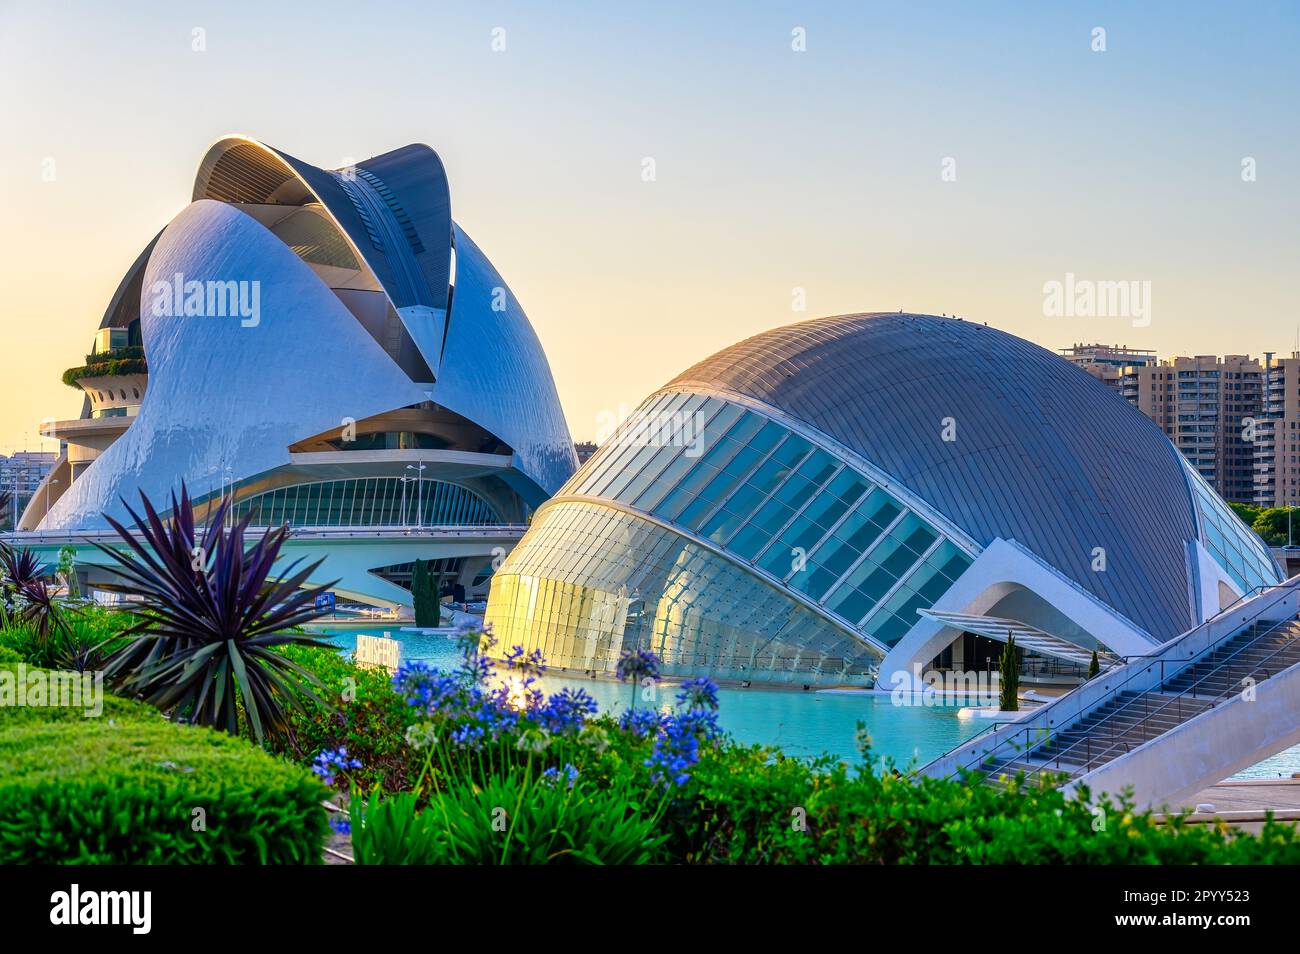 Valencia, Spain - July 17, 2022: L'Hemisferic and the Palau de les Arts buildings. The 'Ciudad de las Artes y las Ciencias' is an international landmark Stock Photo